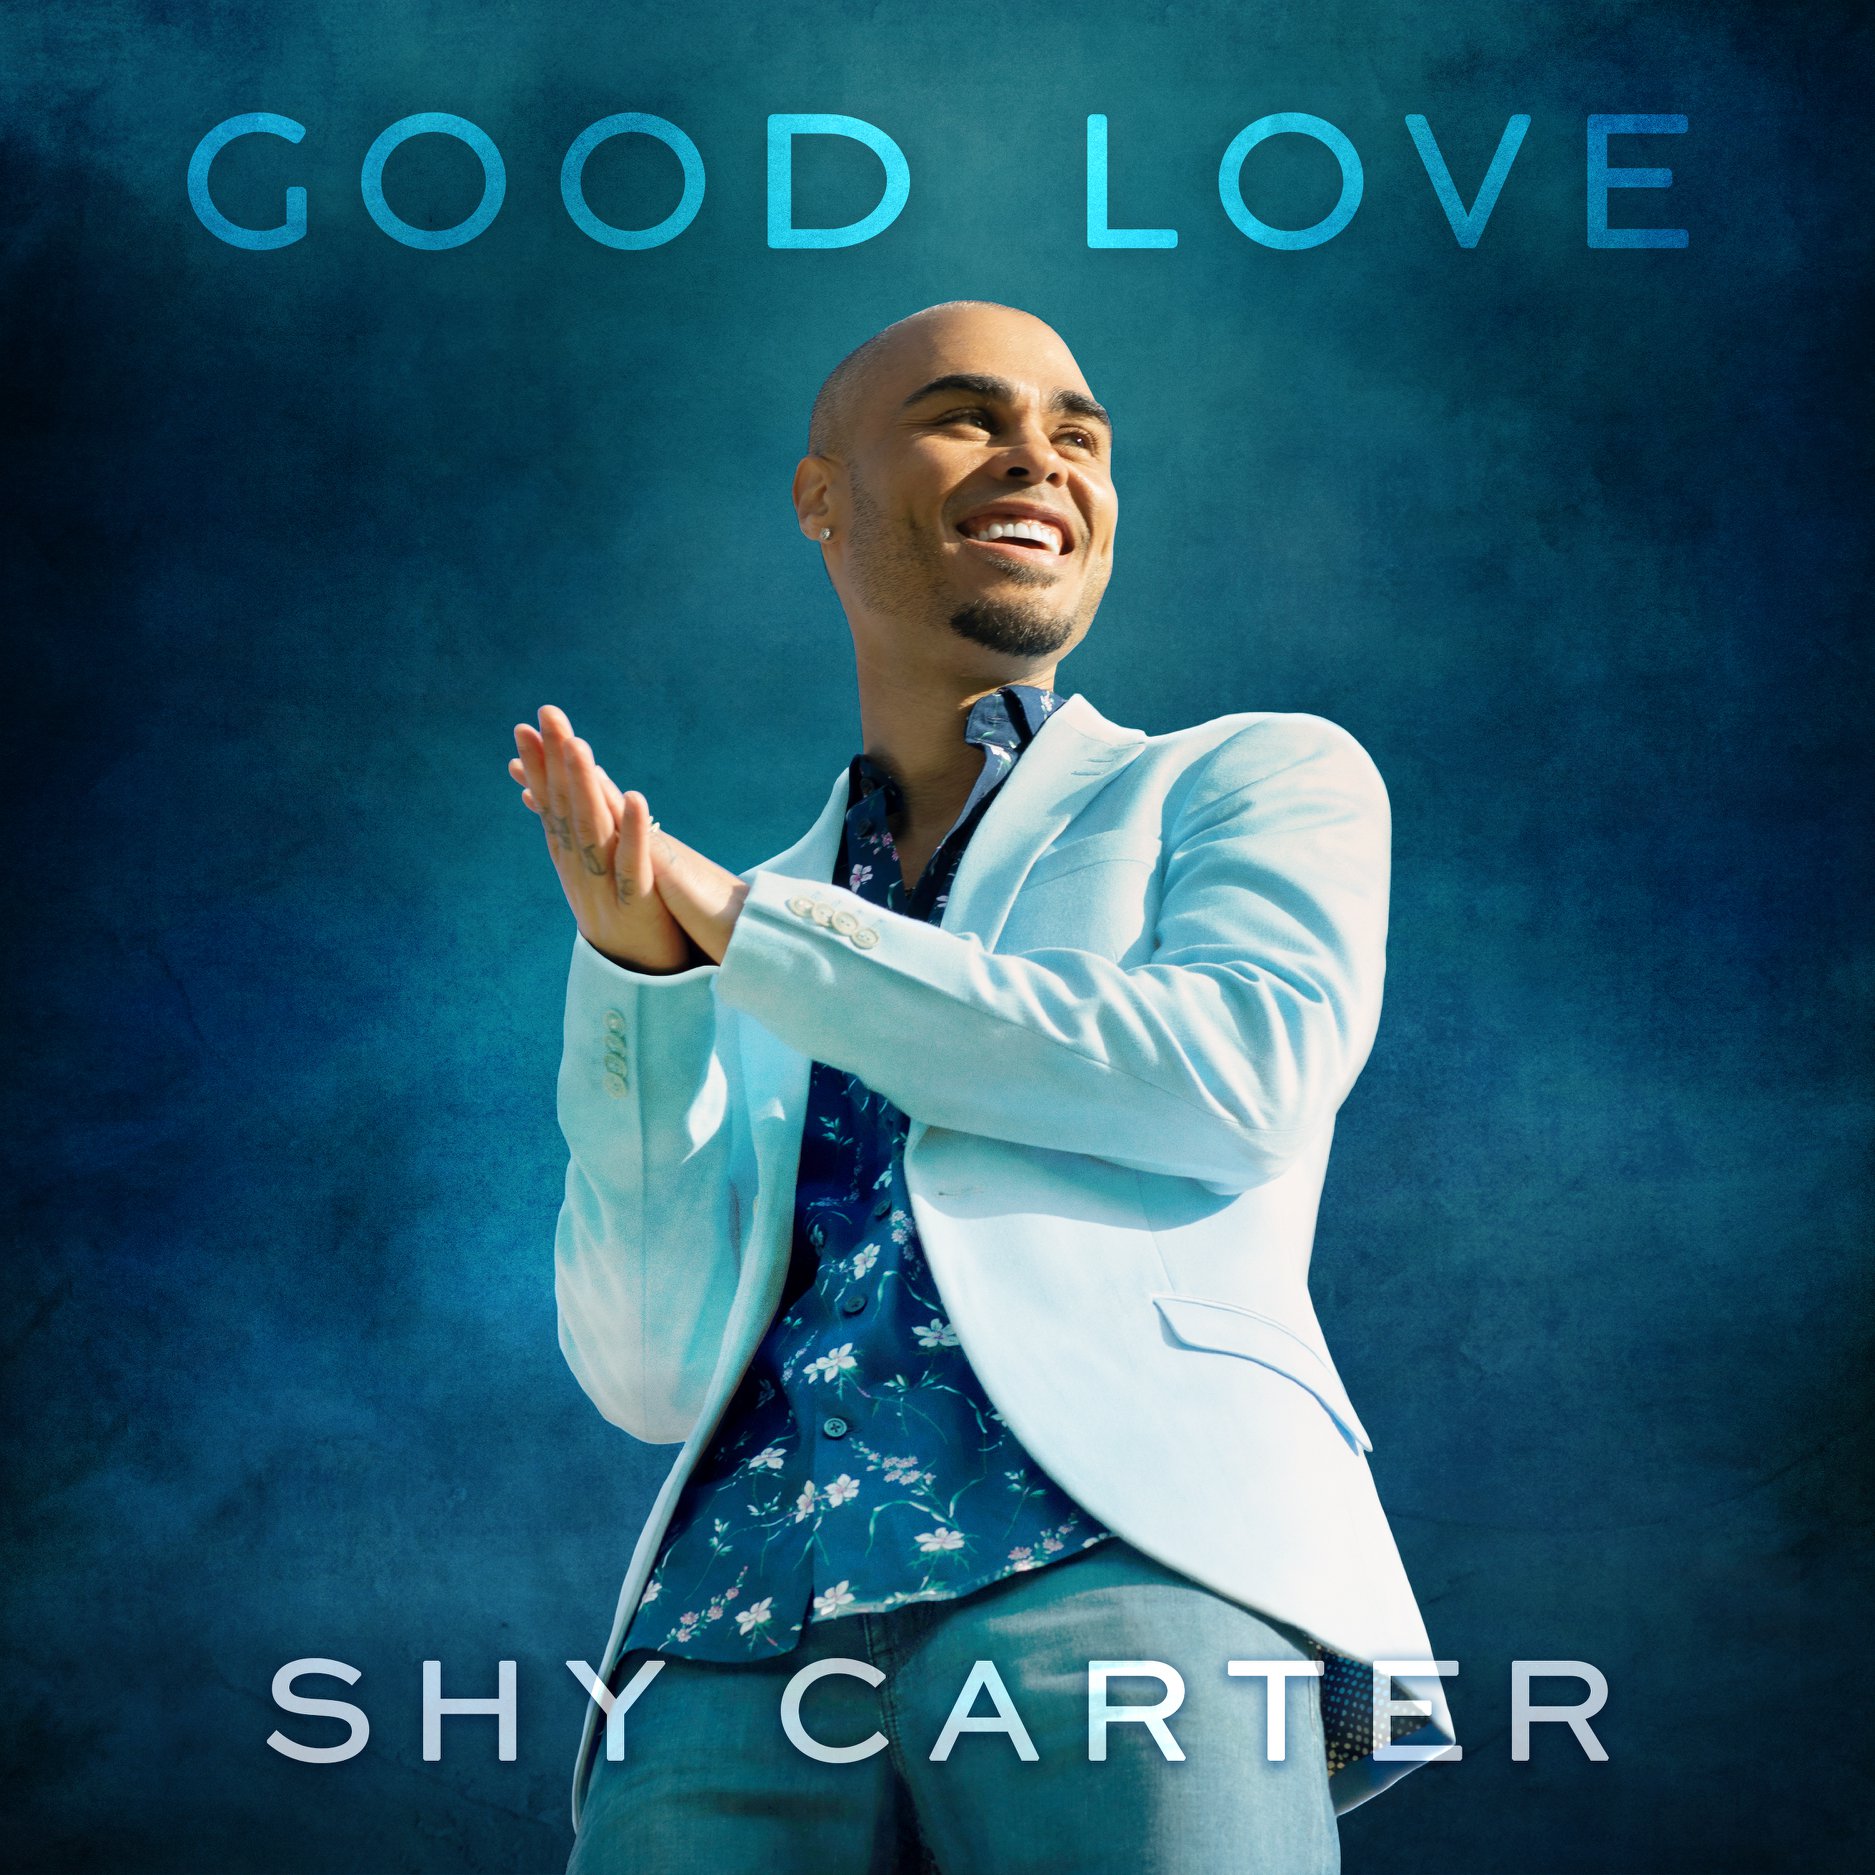 Good Love Shy Carter